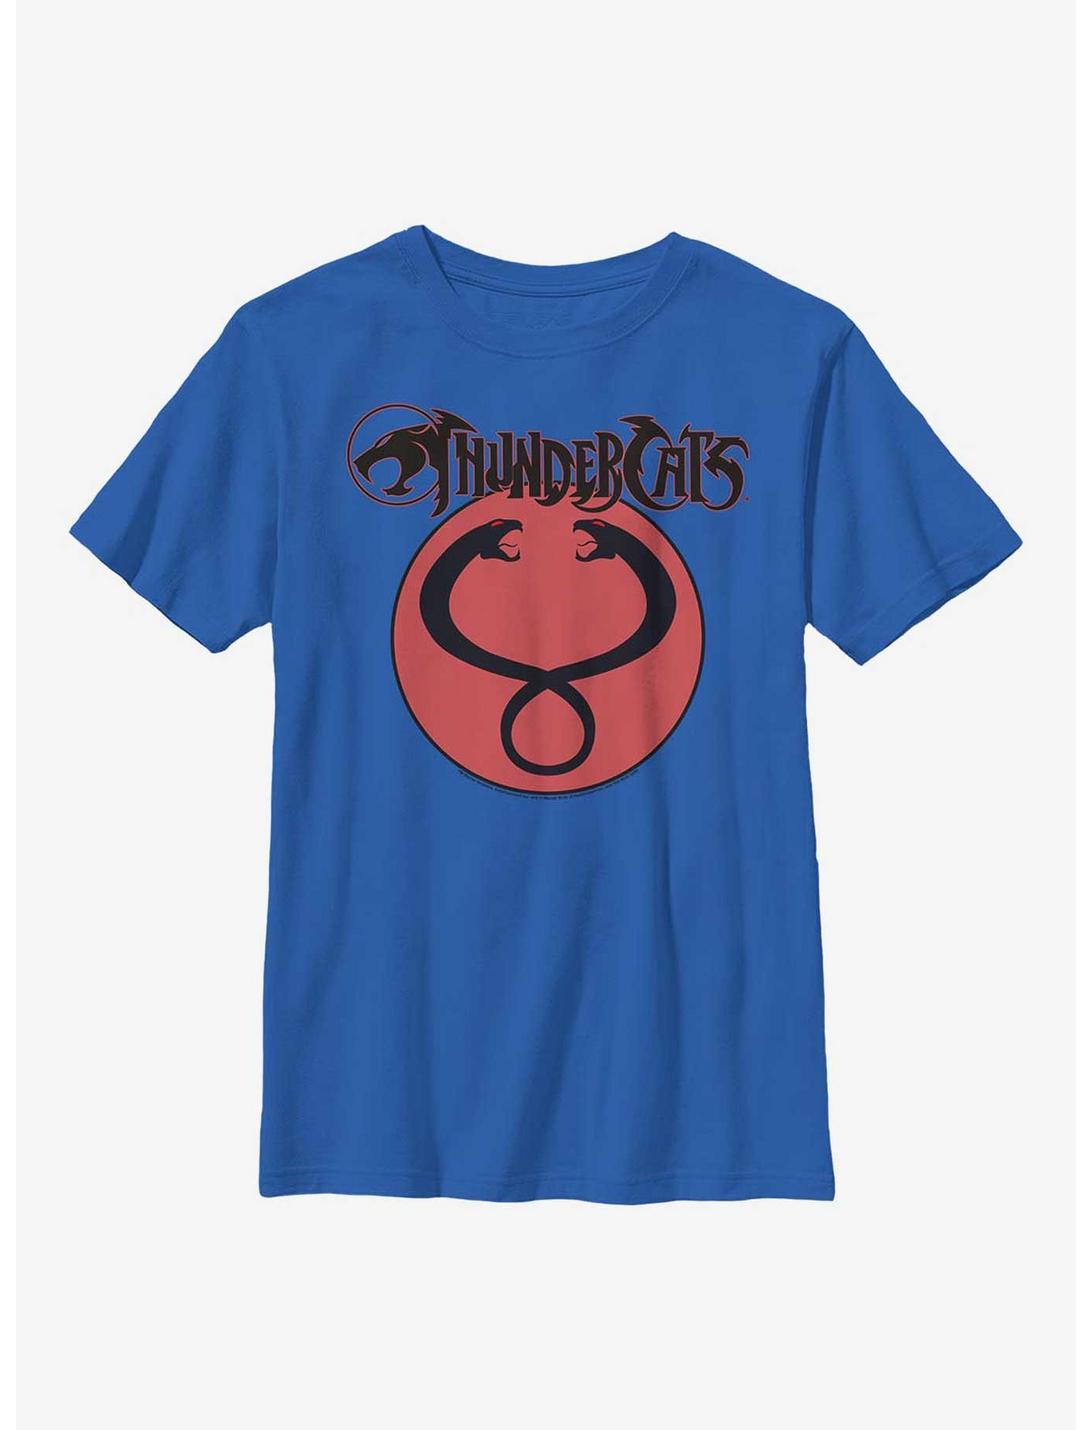 Thundercats Snake Heads Logo Youth T-Shirt, ROYAL, hi-res